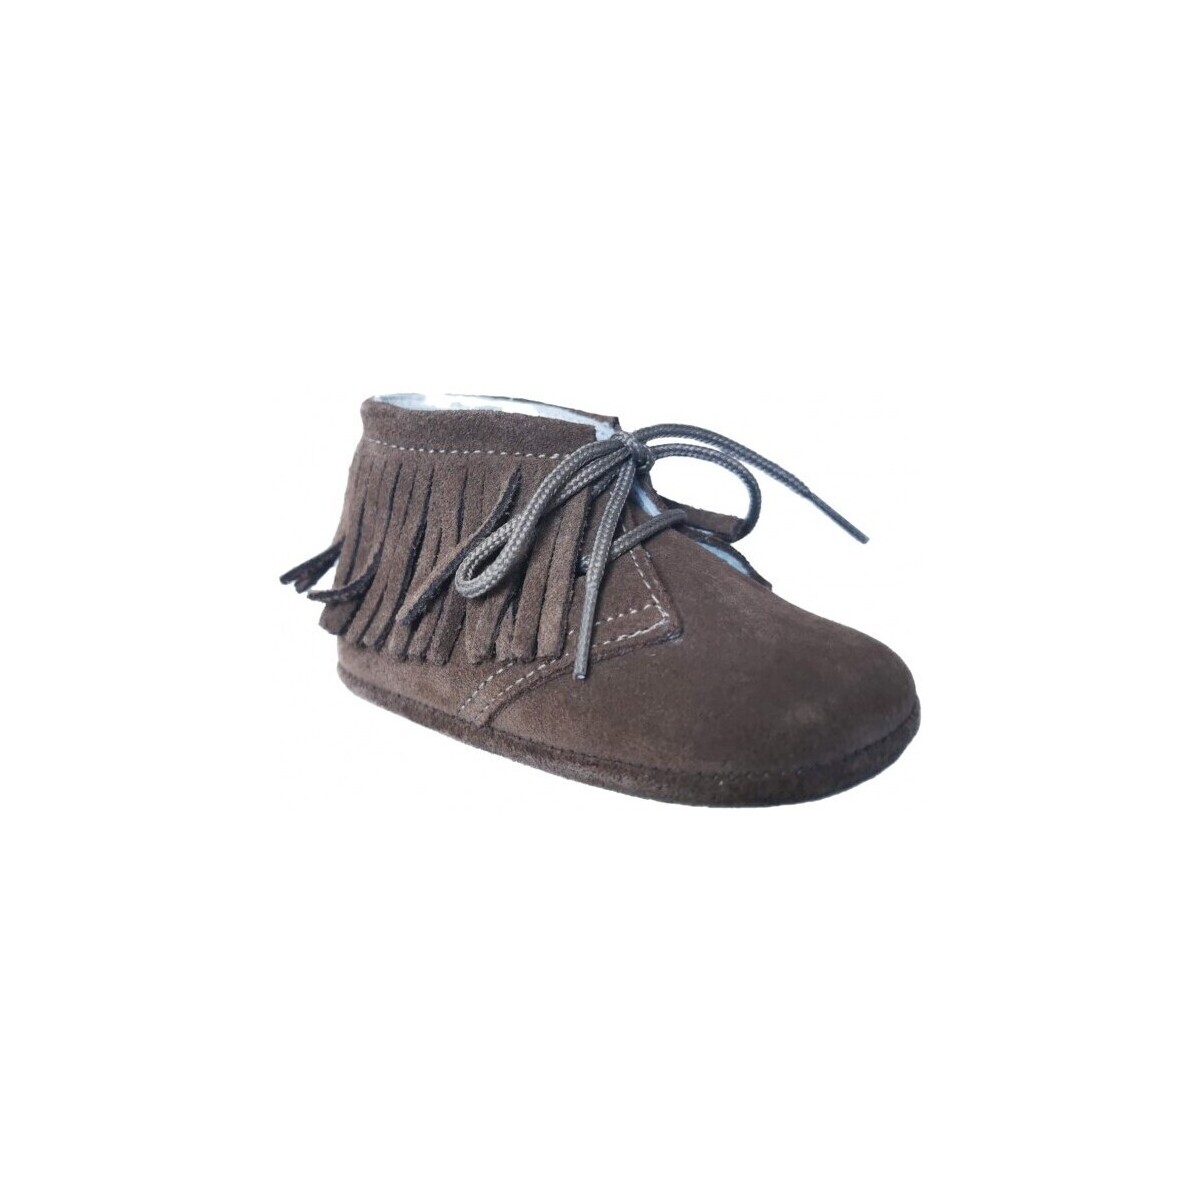 Παπούτσια Αγόρι Σοσονάκια μωρού Gulliver 25713-15 Brown